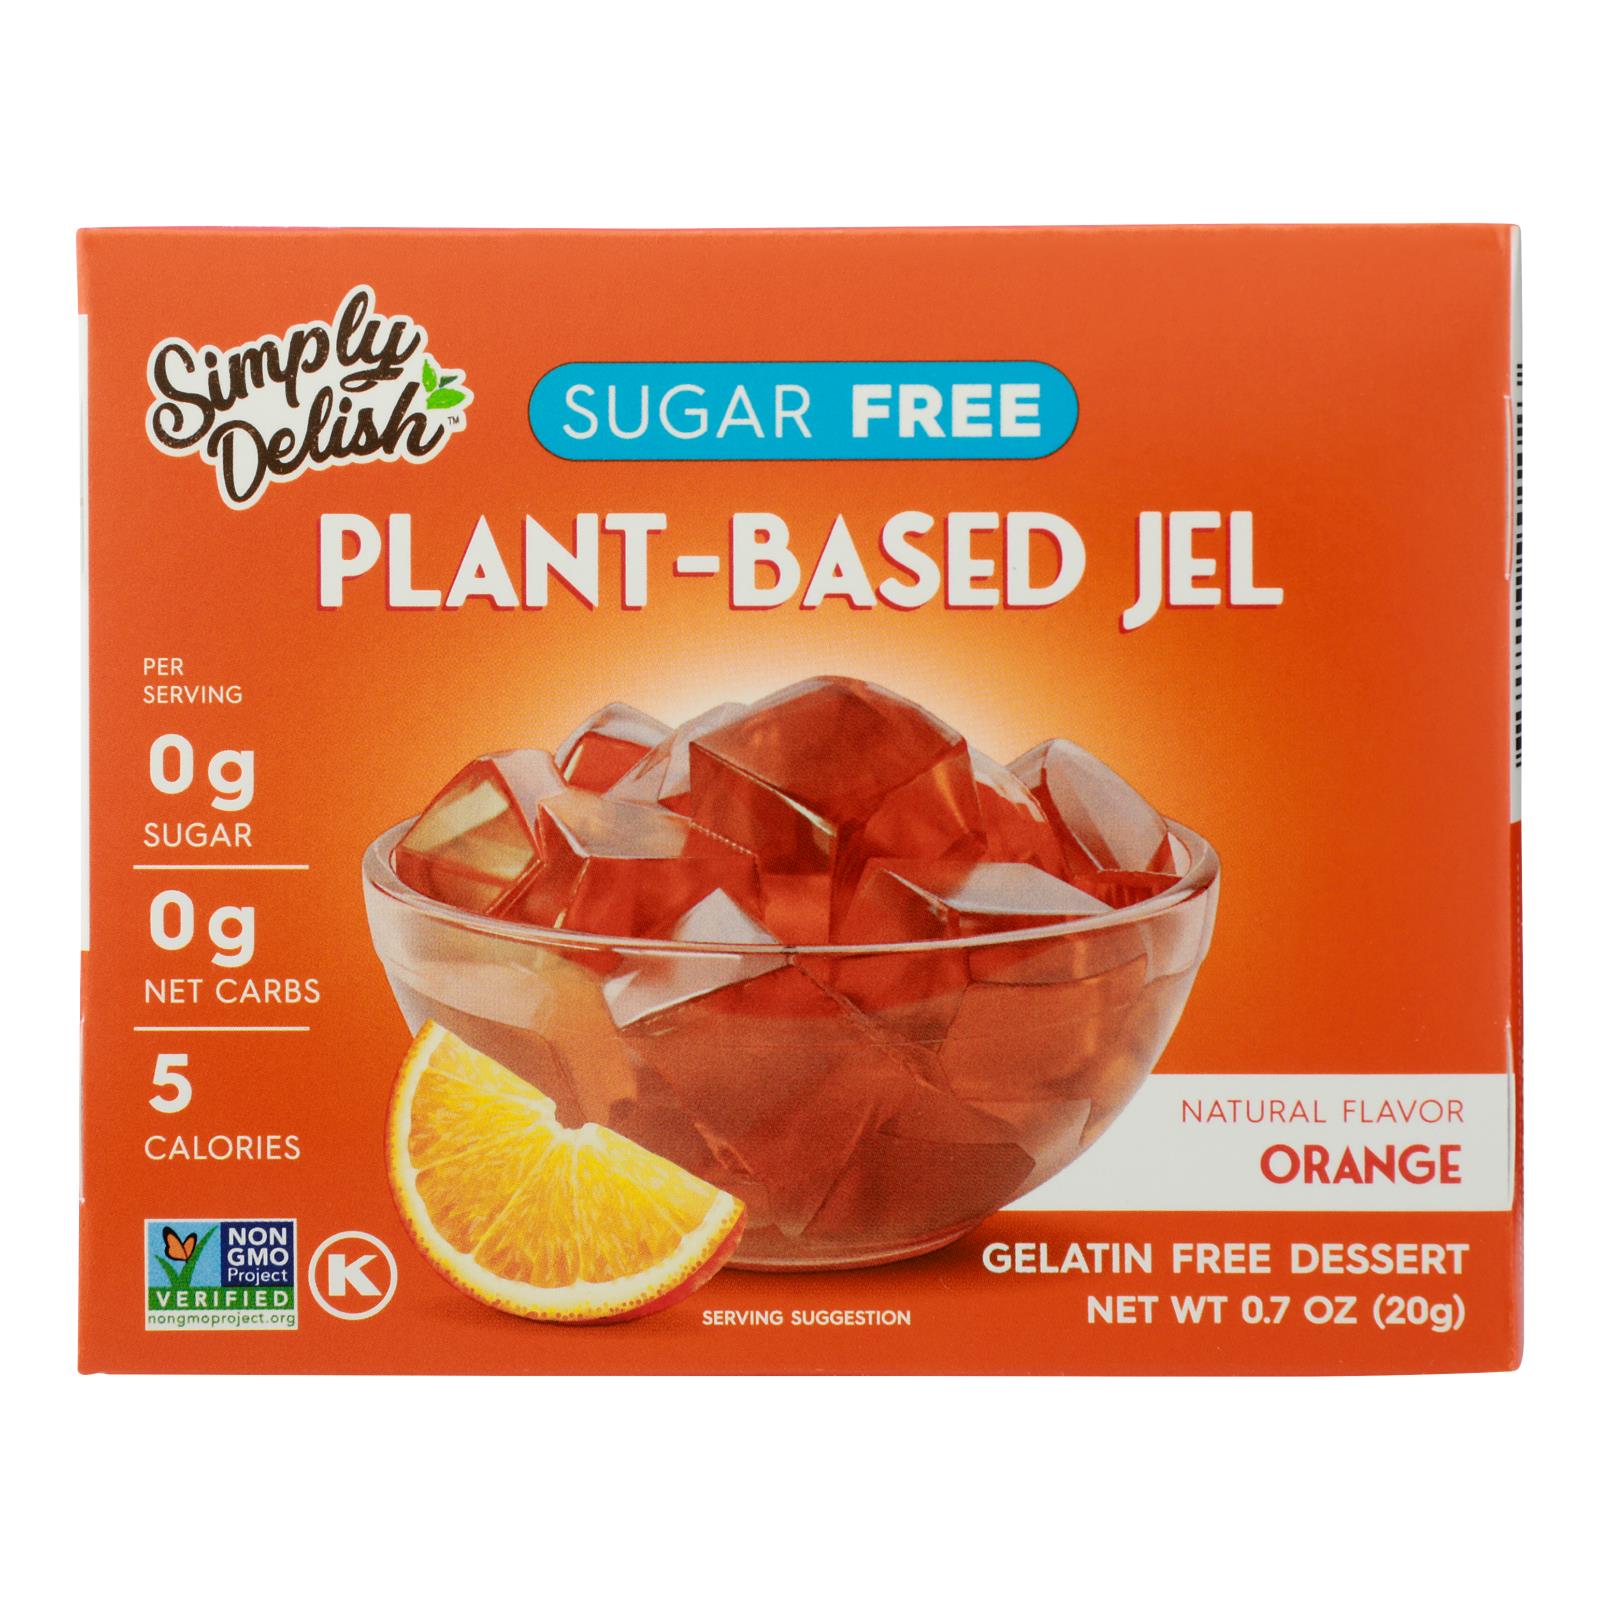 Simply Delish Natural Jel Dessert - Orange - Case Of 6 - 1.6 Oz.